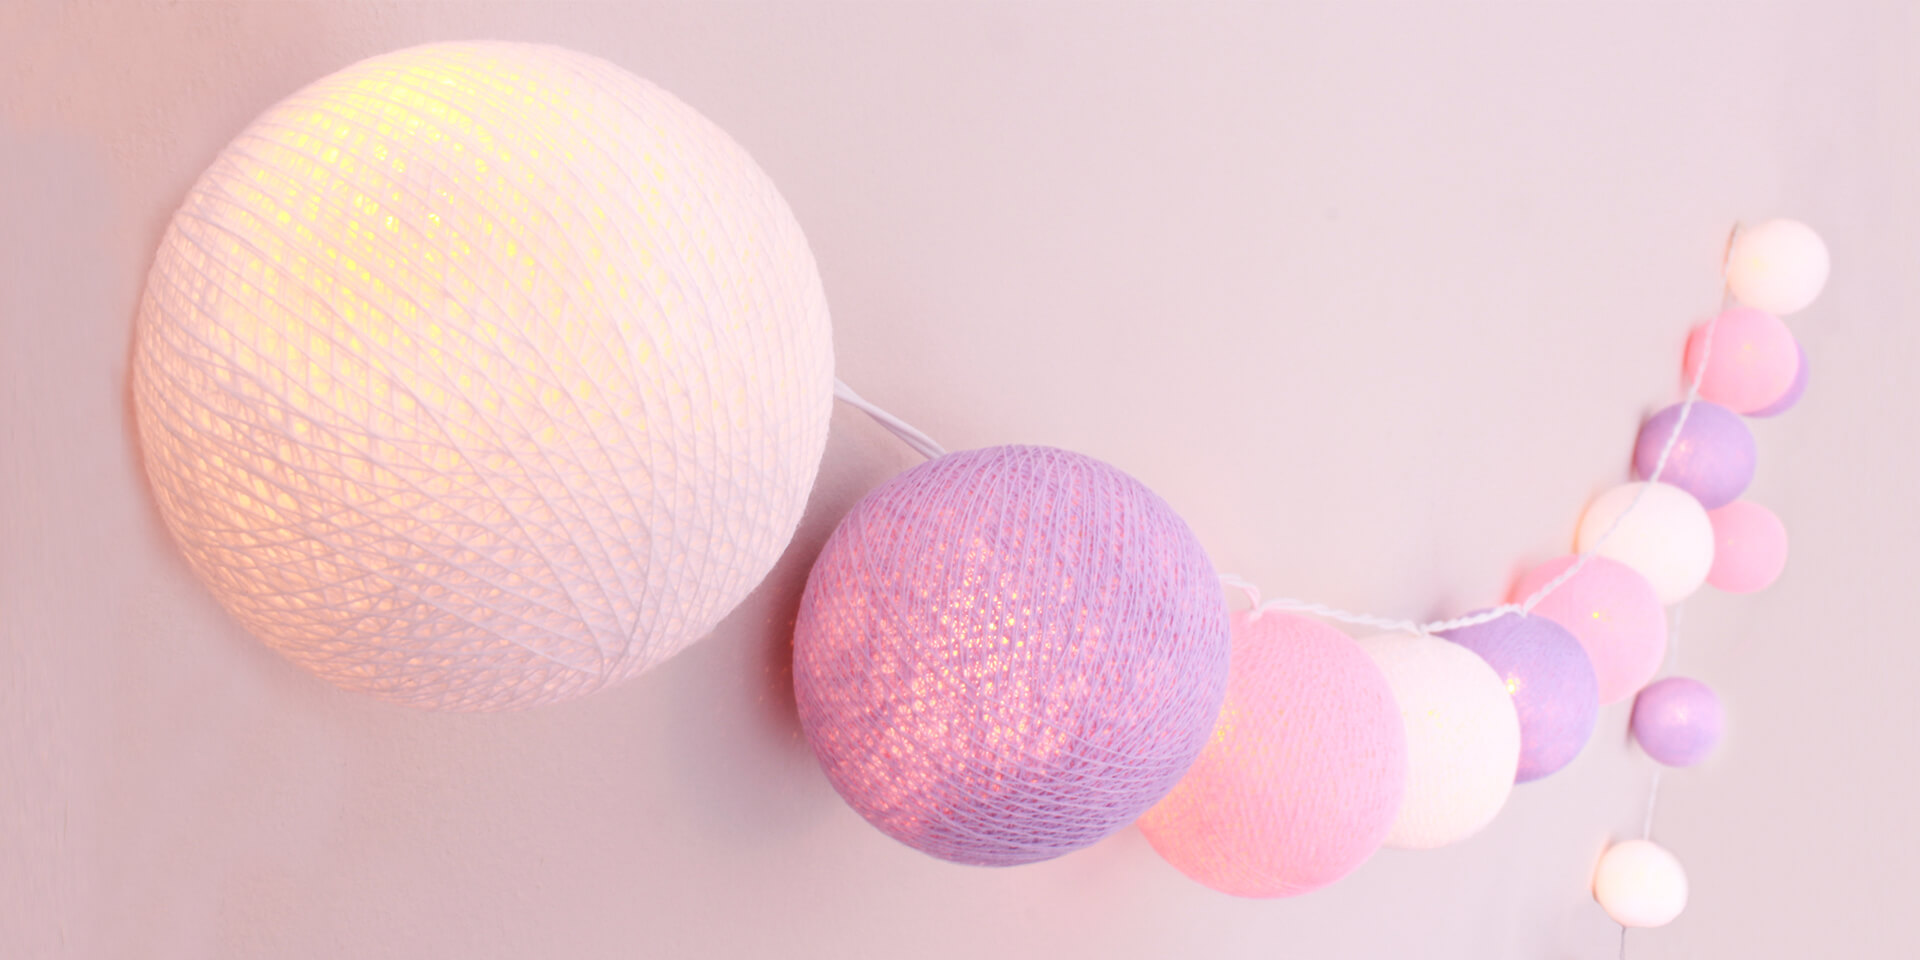 Handgearbeitete LED Lichterkette mit Kugeln aus Baumwolle. Cotton Ball Lights in Weiß, Rosa und Violett.